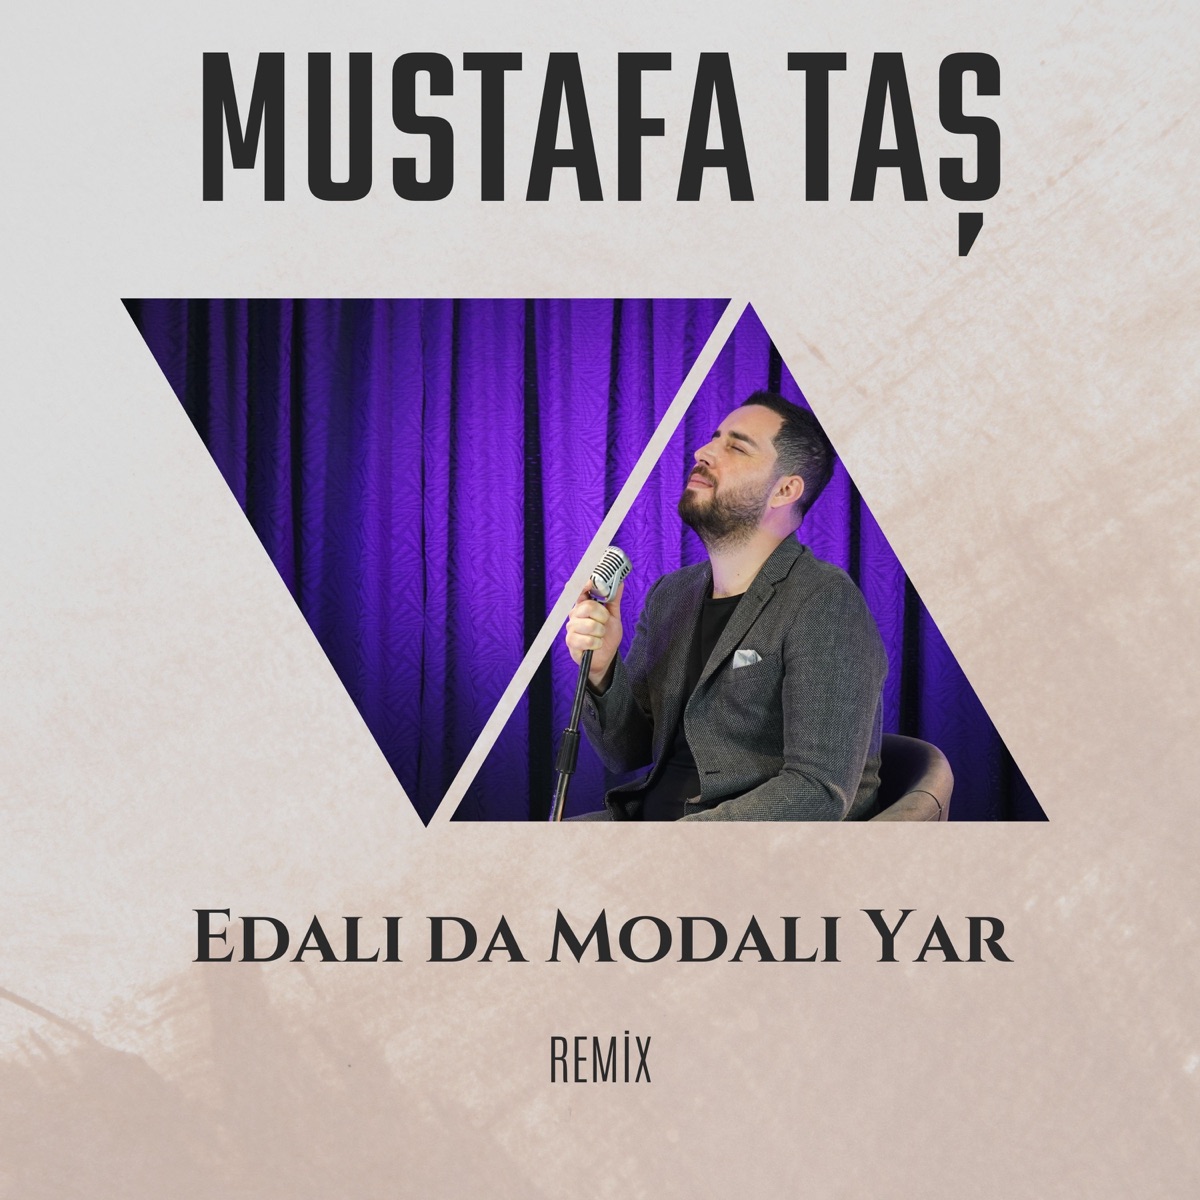 Best Of Mustafa Taş / Sallada Gitsin Ankaralı - Album by Mustafa Taş -  Apple Music